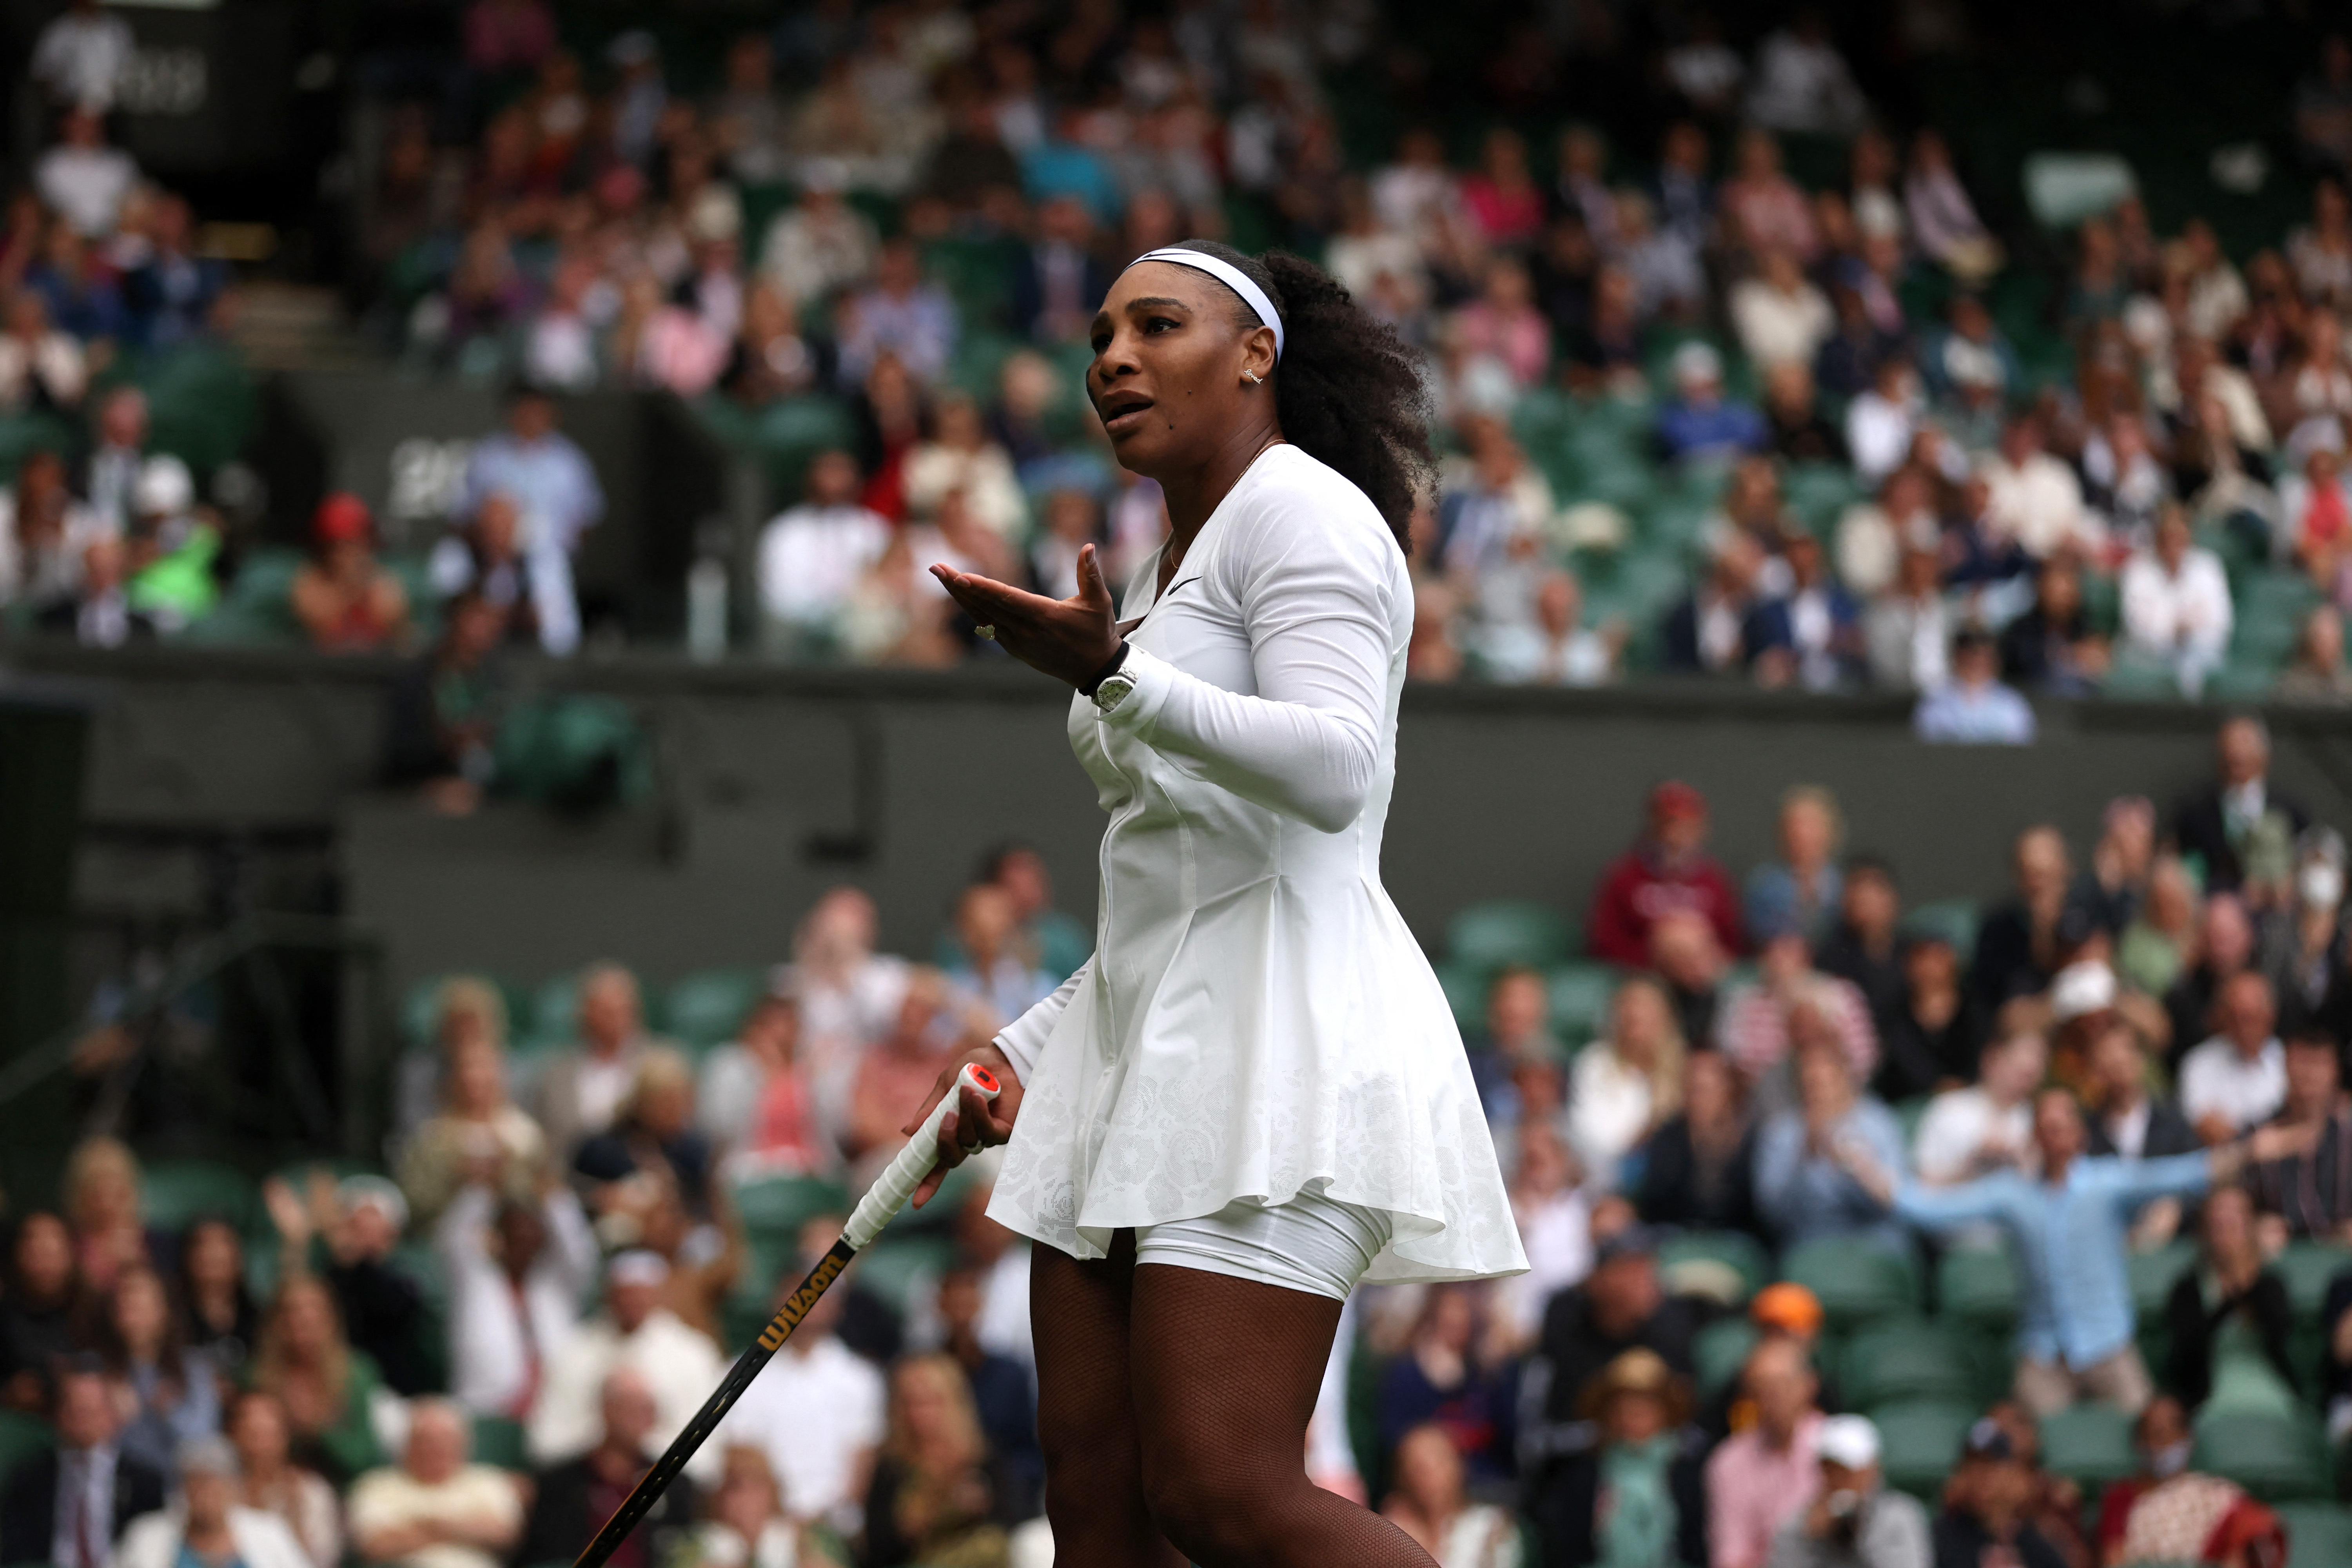 Según la icónica Vogue, “este año, es probable que veamos un gran regreso de los clásicos vestidos de verano aprobados en Wimbledon" (REUTER)